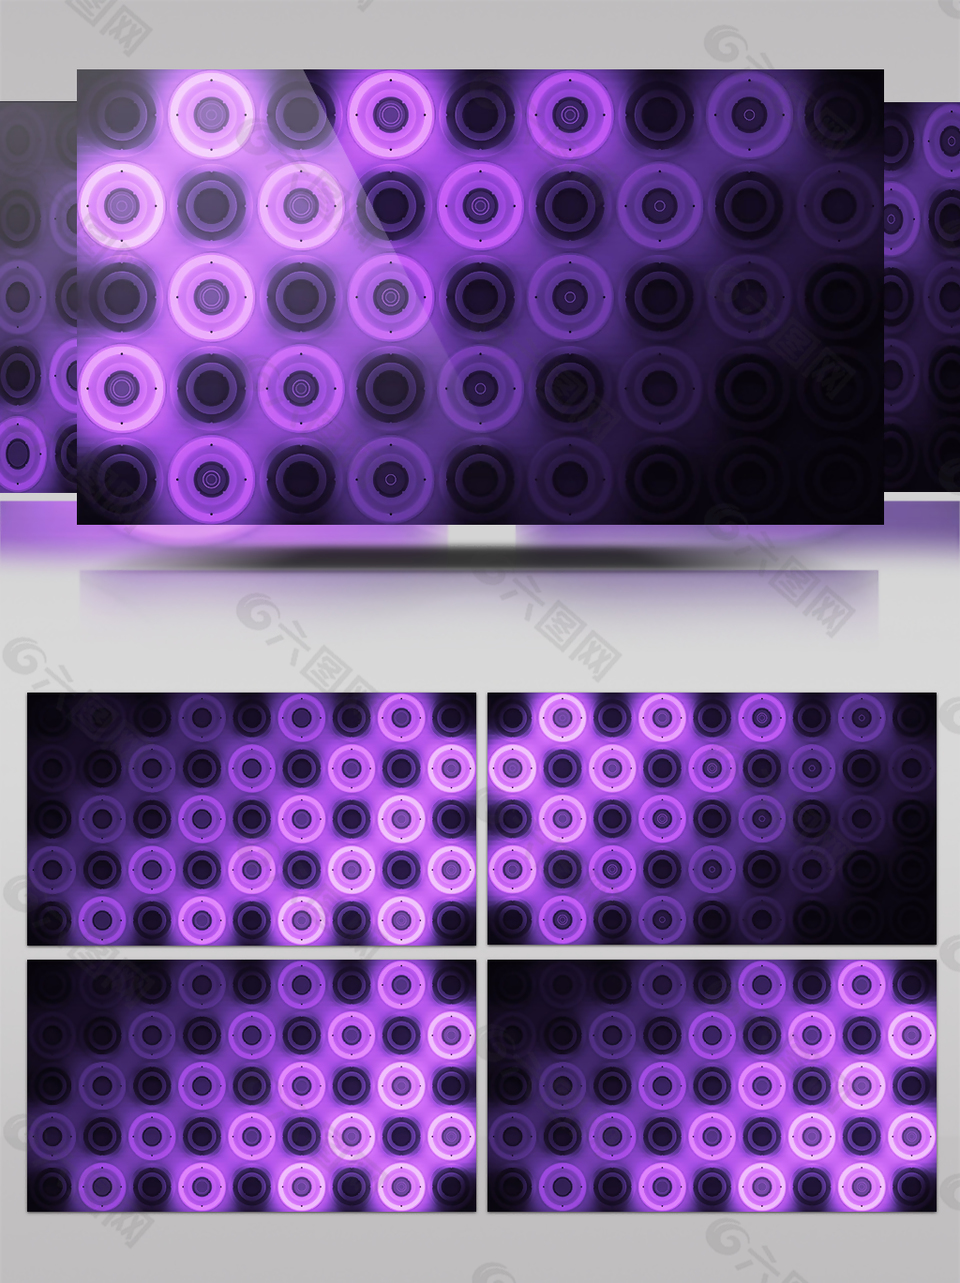 暗影紫色圆圈粒子视频素材